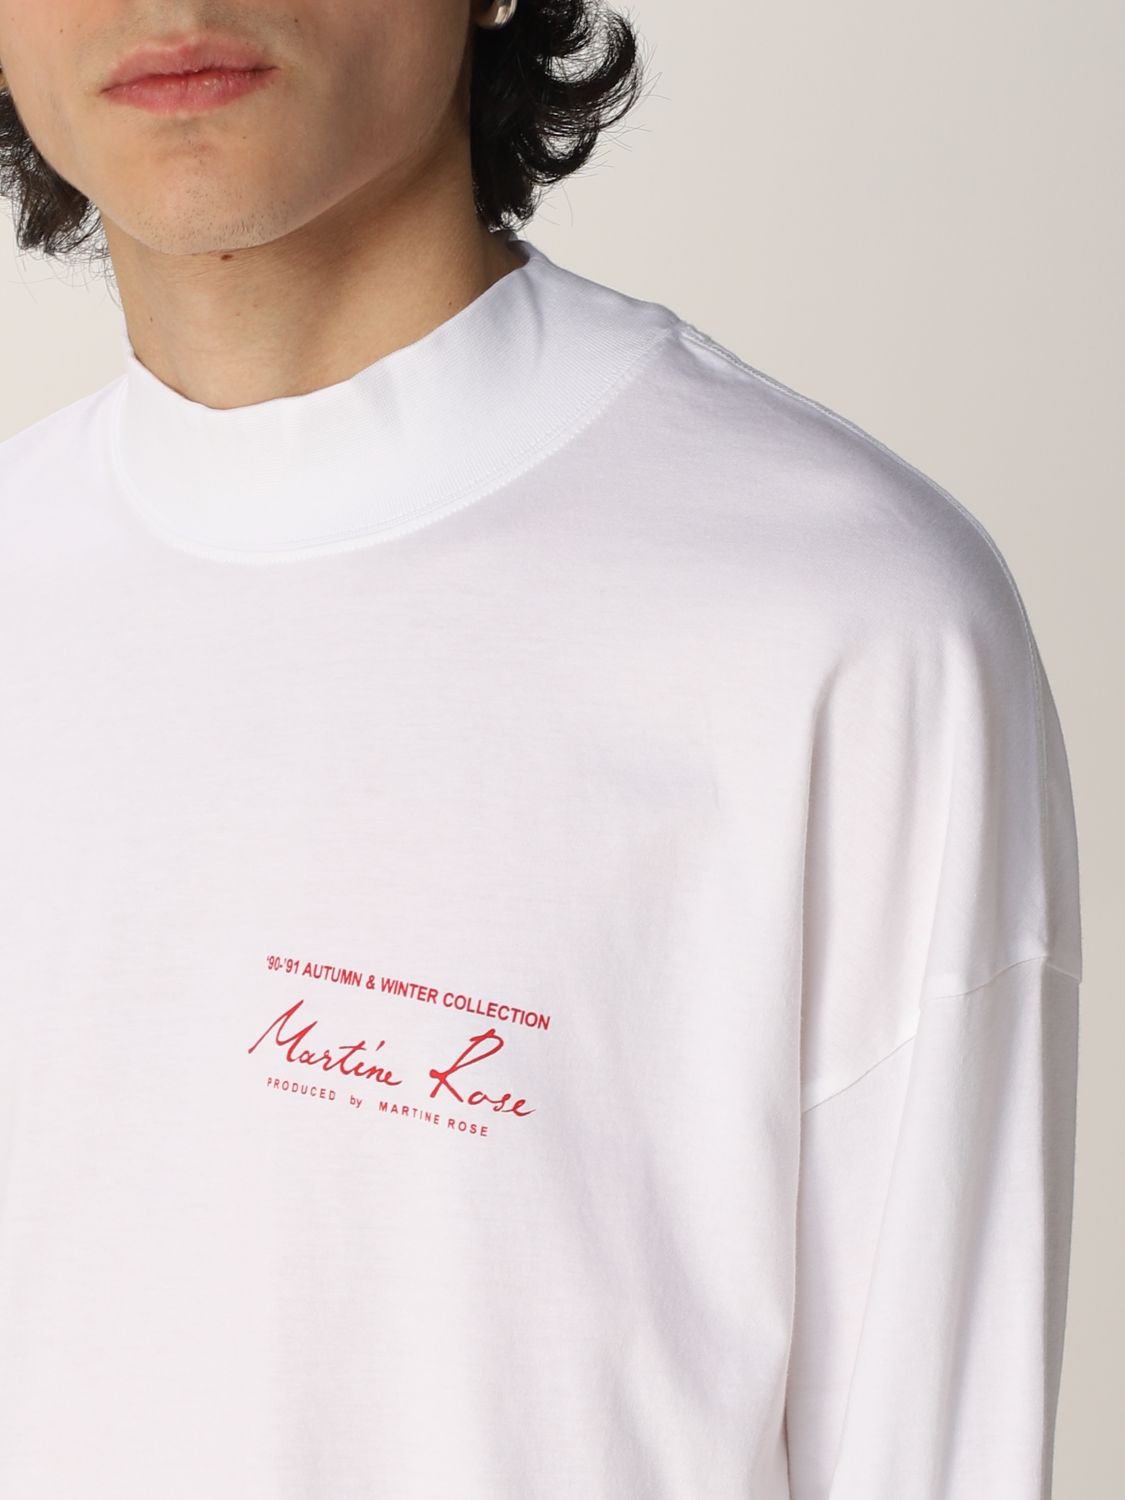 Rose x change cotton jersey t-shirt - Martine Rose - Men